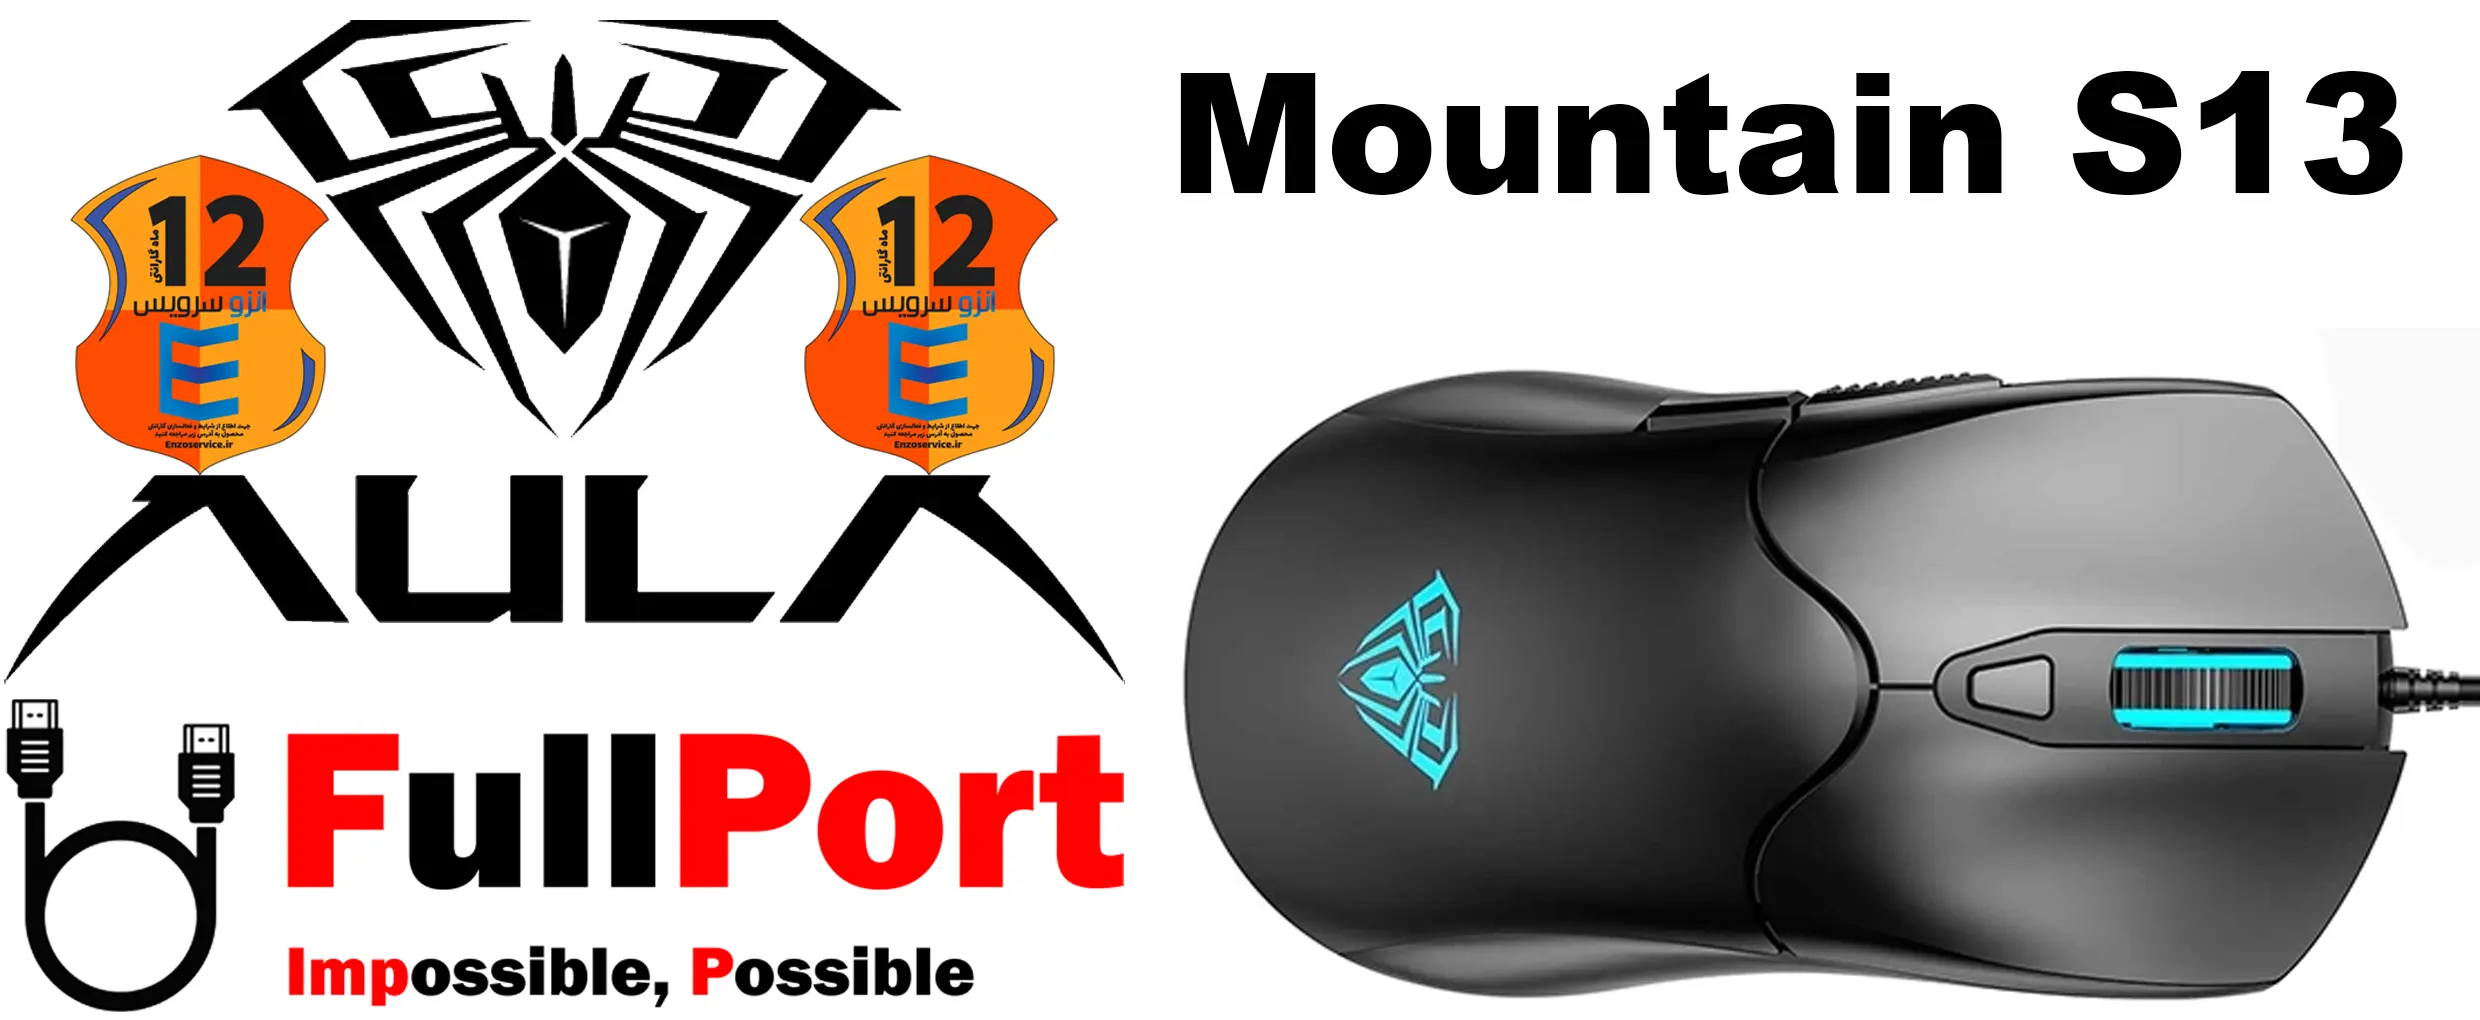 خرید اینترنتی موس سیم دار آئولا | AULA گیمینگ مدل Mountain S13 با گارانتی انزو سرویس از فروشگاه اینترنتی فول پورت